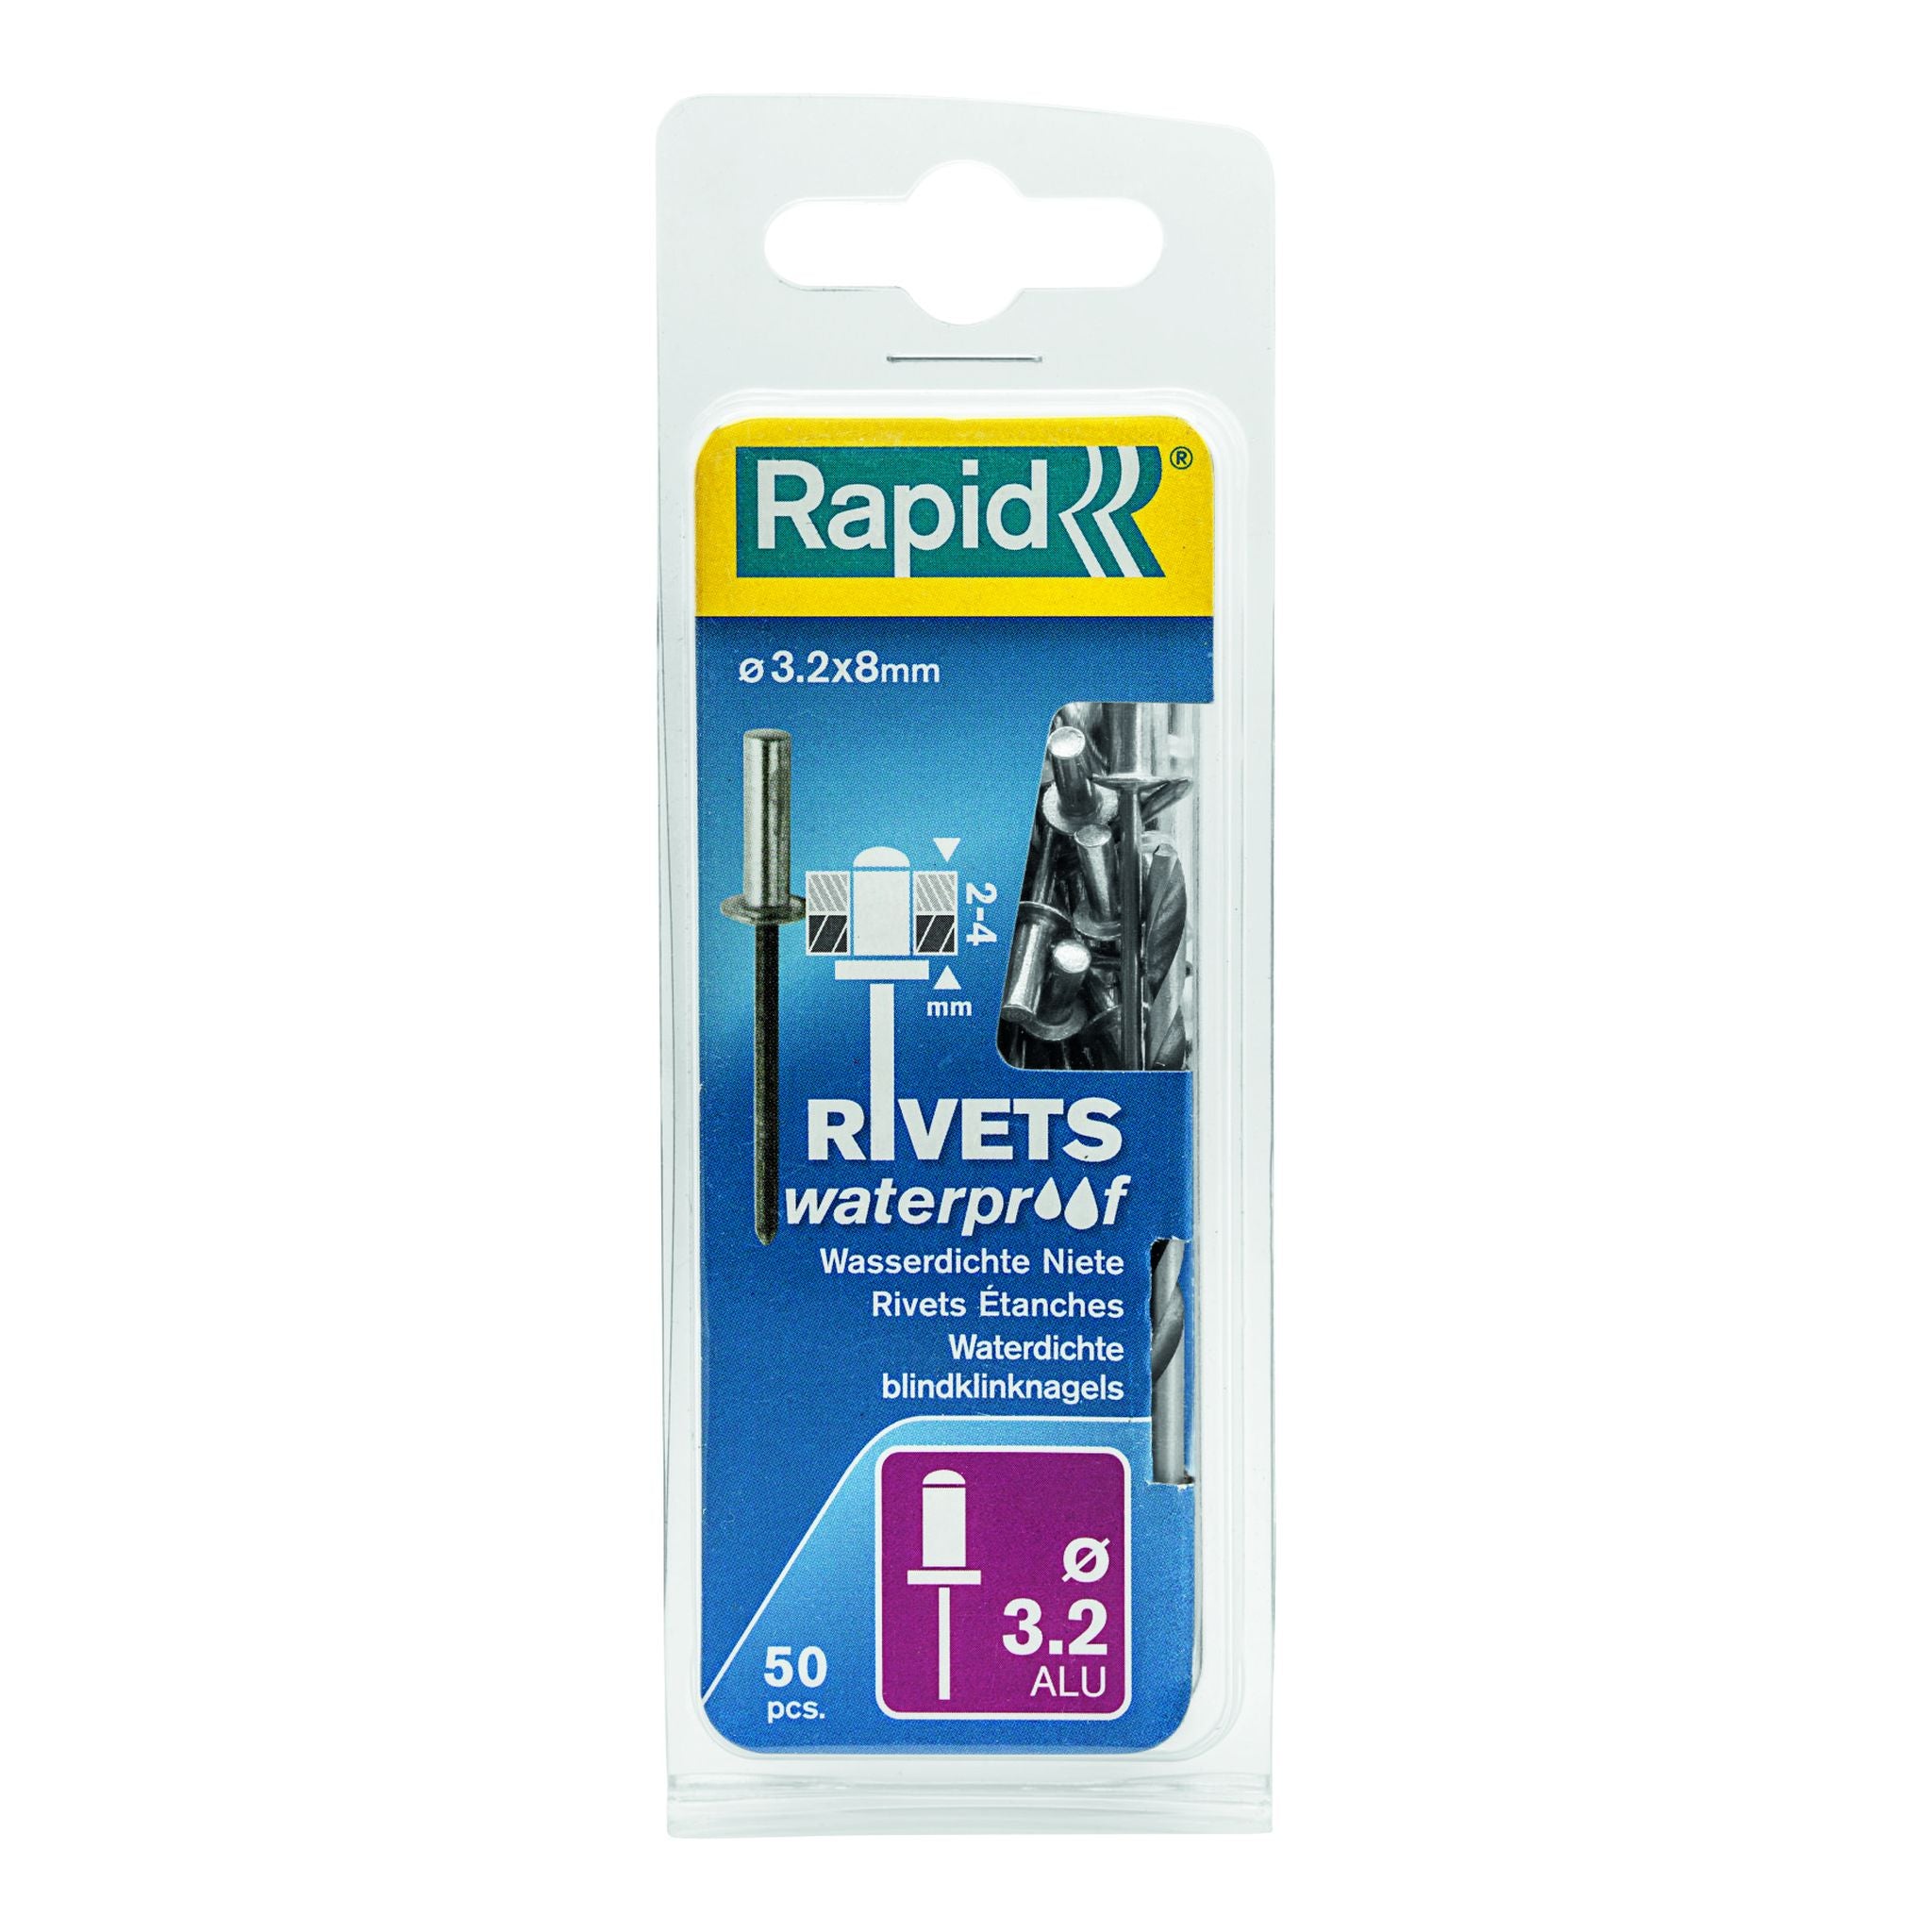 Rapid Rivets 3.2x8mm W/proof 50pc 5000399